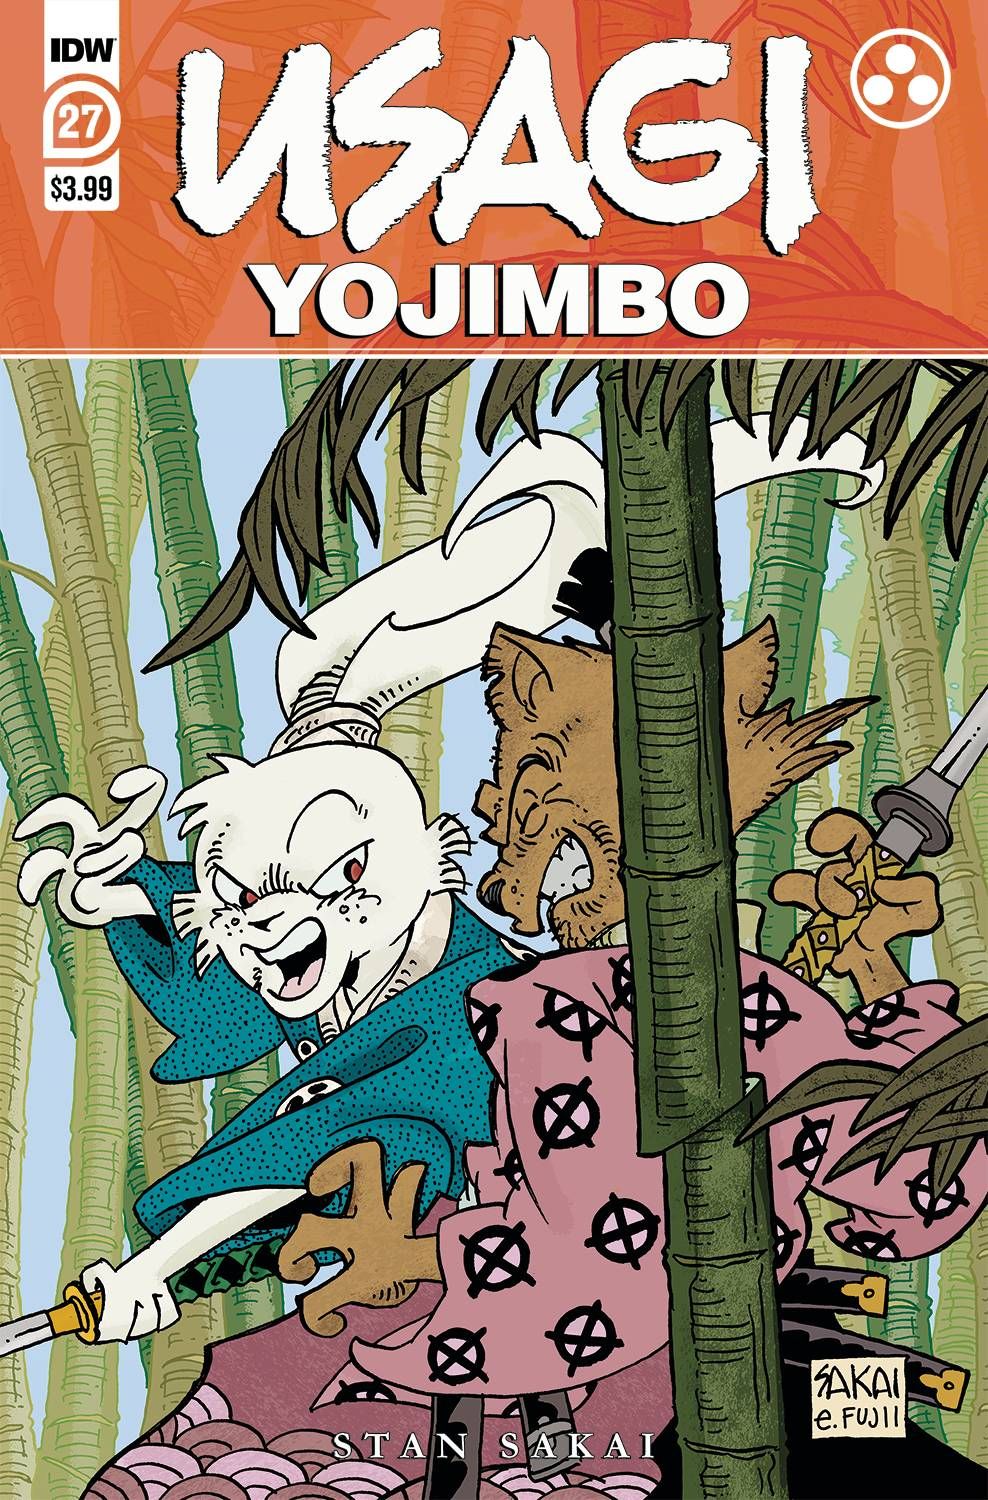 Usagi Yojimbo #27 Comic